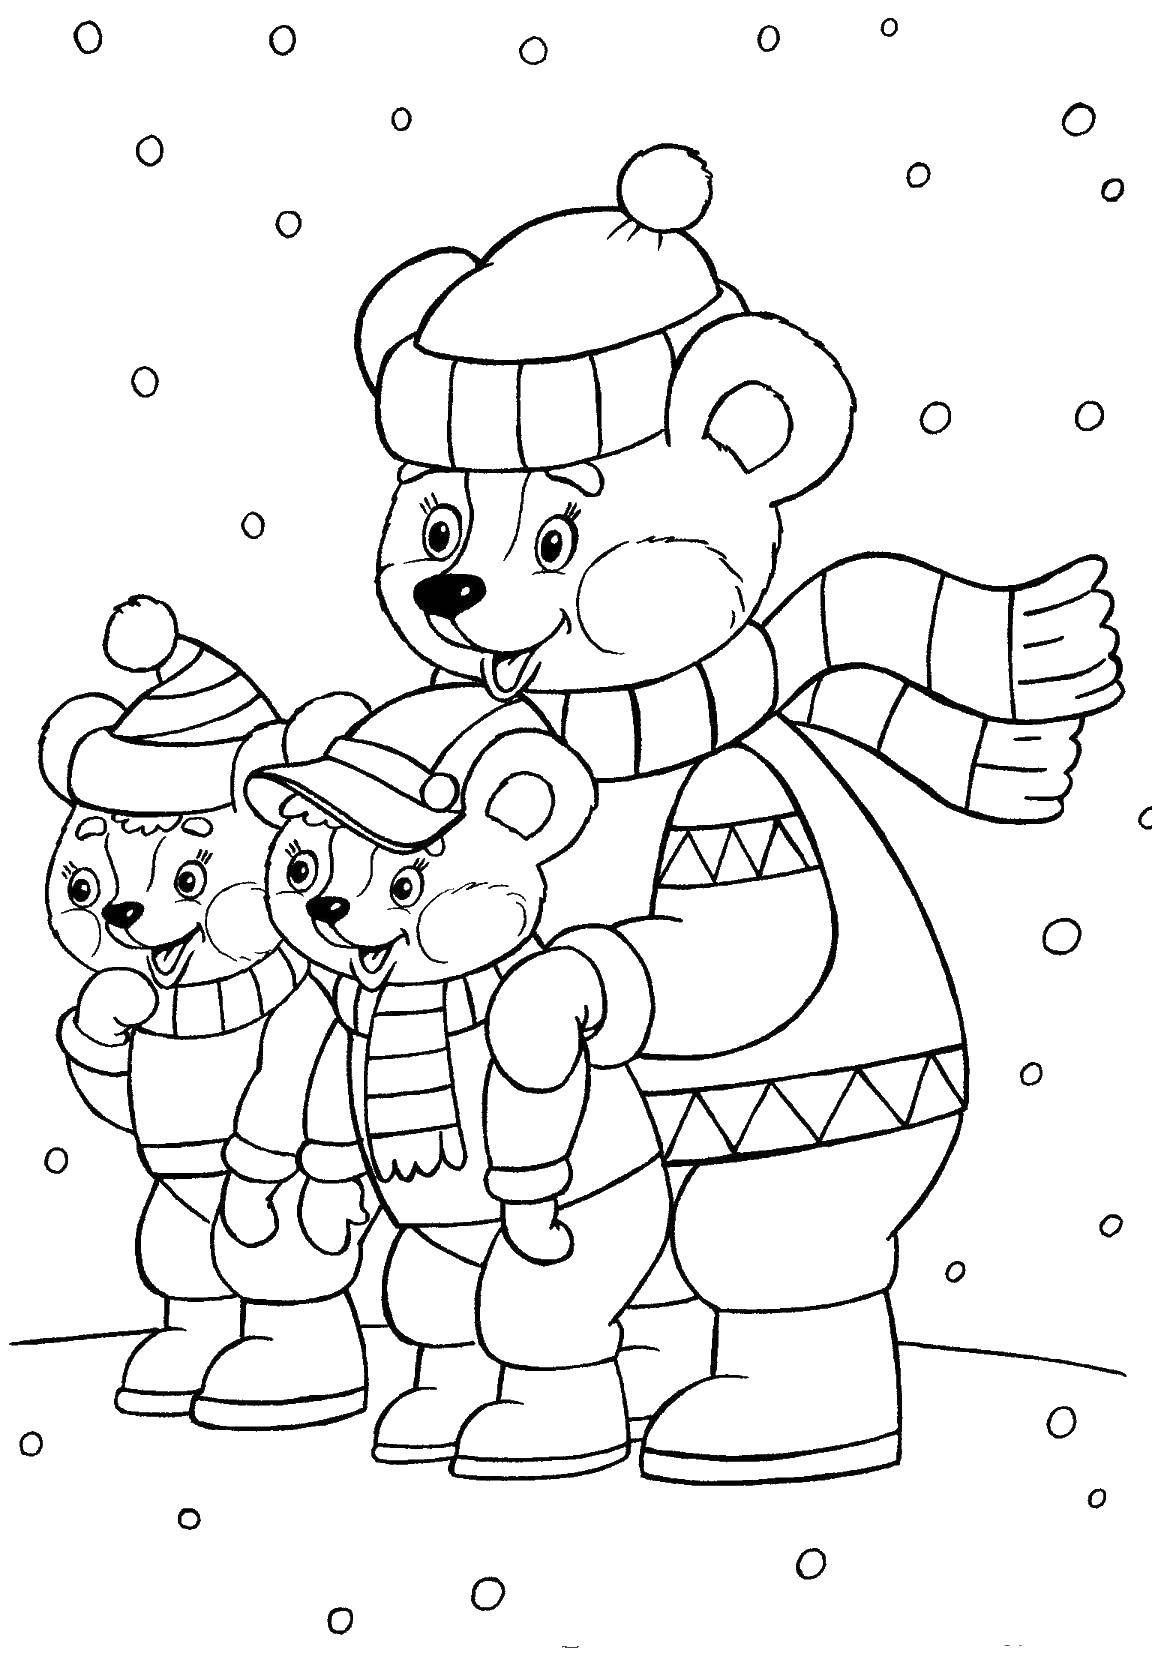  Медведь с медвежатами зимой